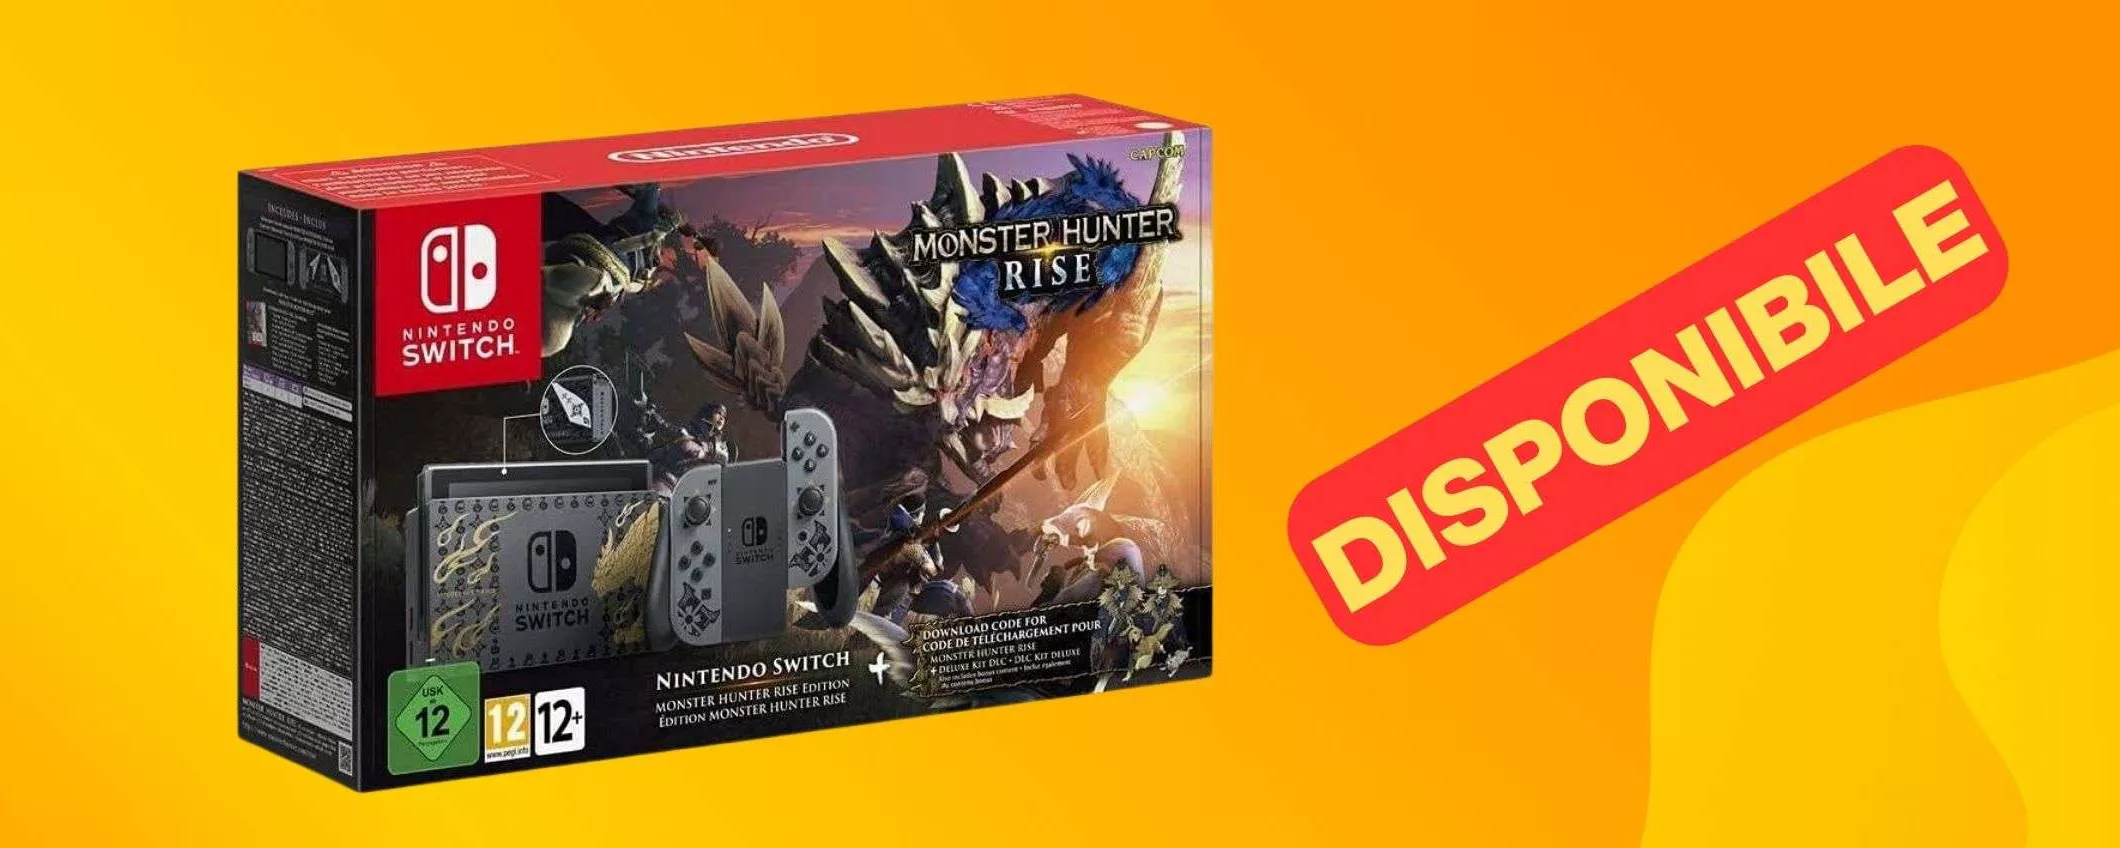 La rarissima Nintendo Switch Edizione Monster Hunter è tornata su Amazon